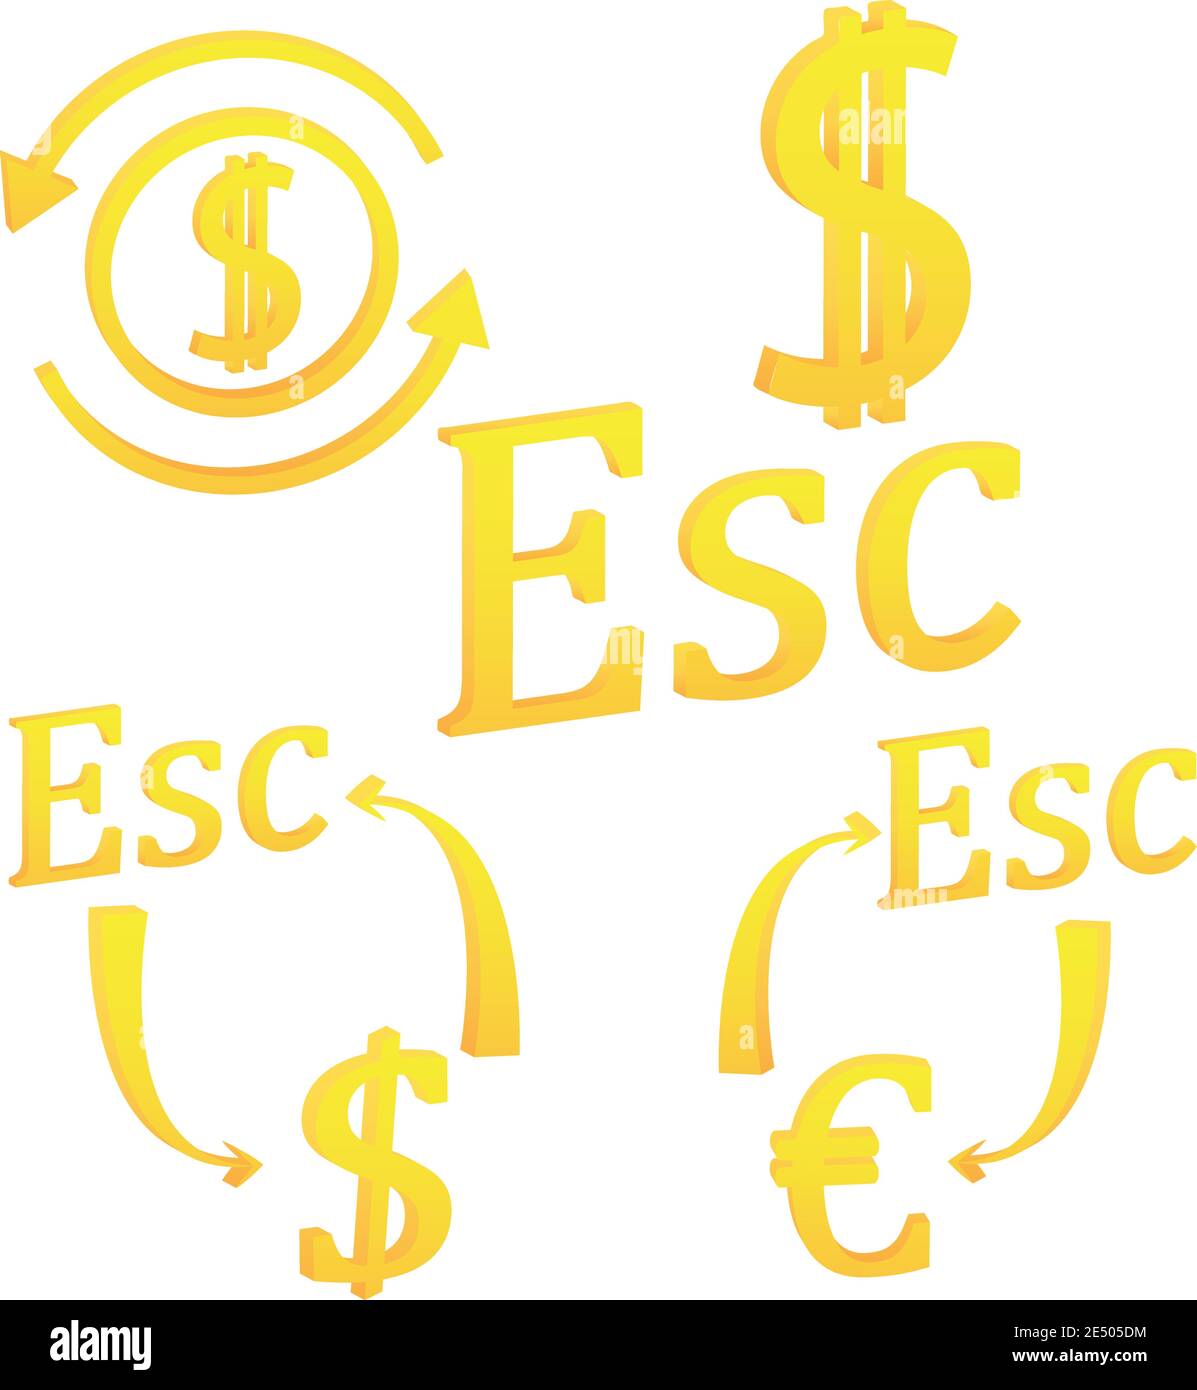 Cape Verde Escudo currency symbol icon Stock Vector